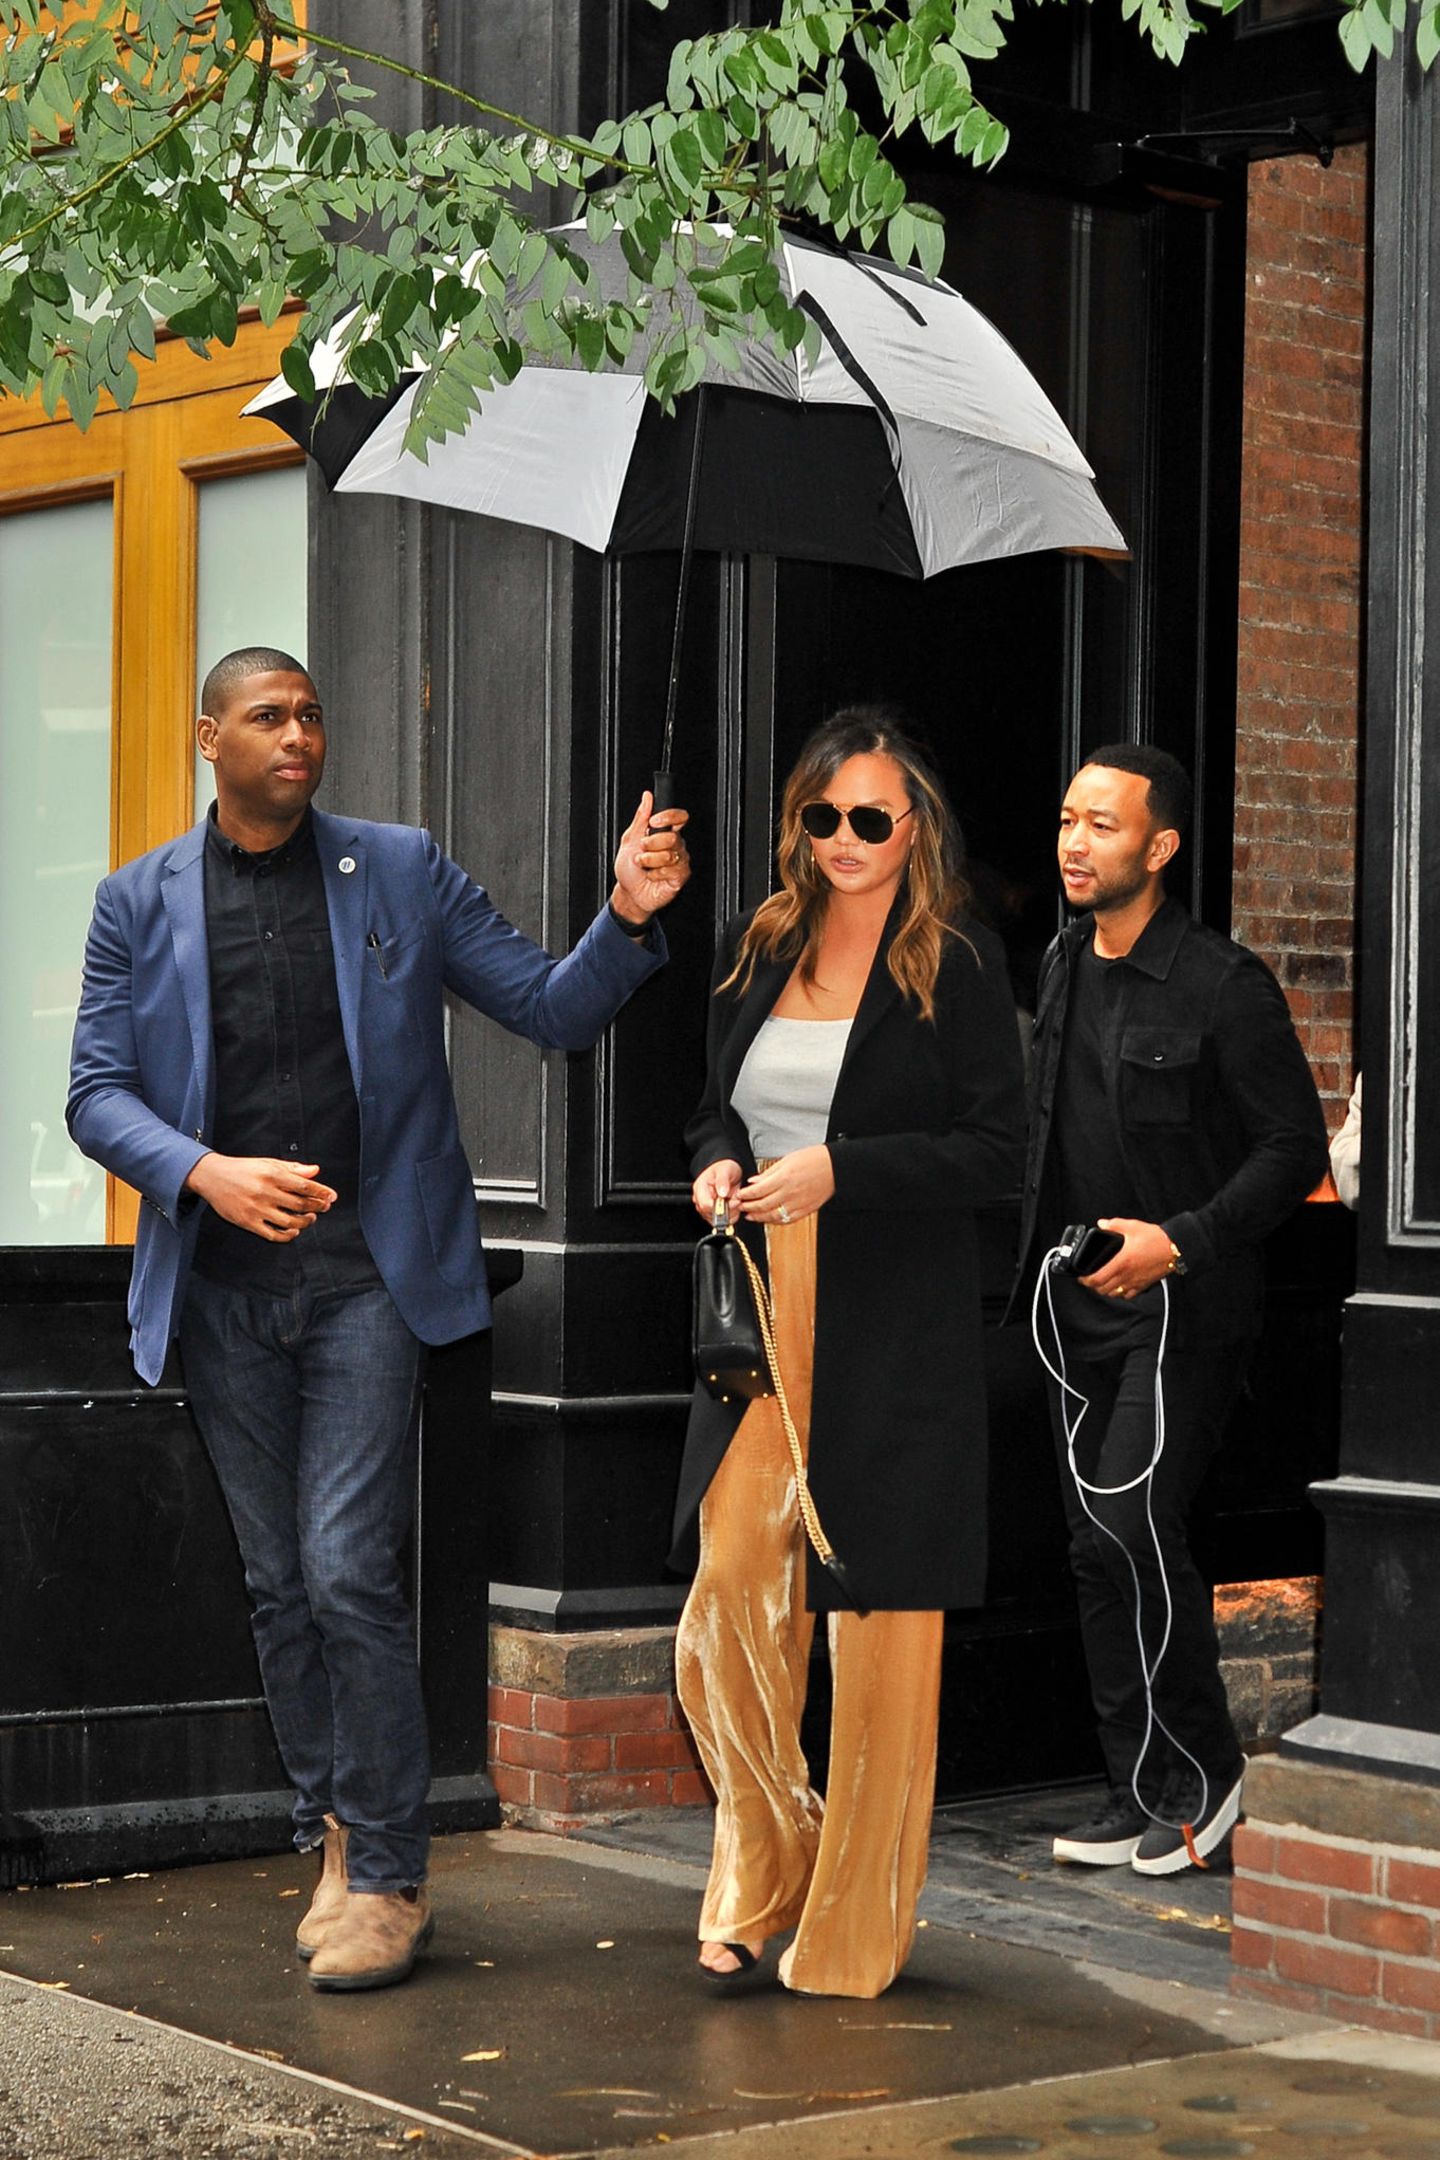 Bei Regenwetter den Schirm selber tragen? Nichts für Chrissy Teigen! Die lässt ihn sich von ihrem Bodyguard halten. 